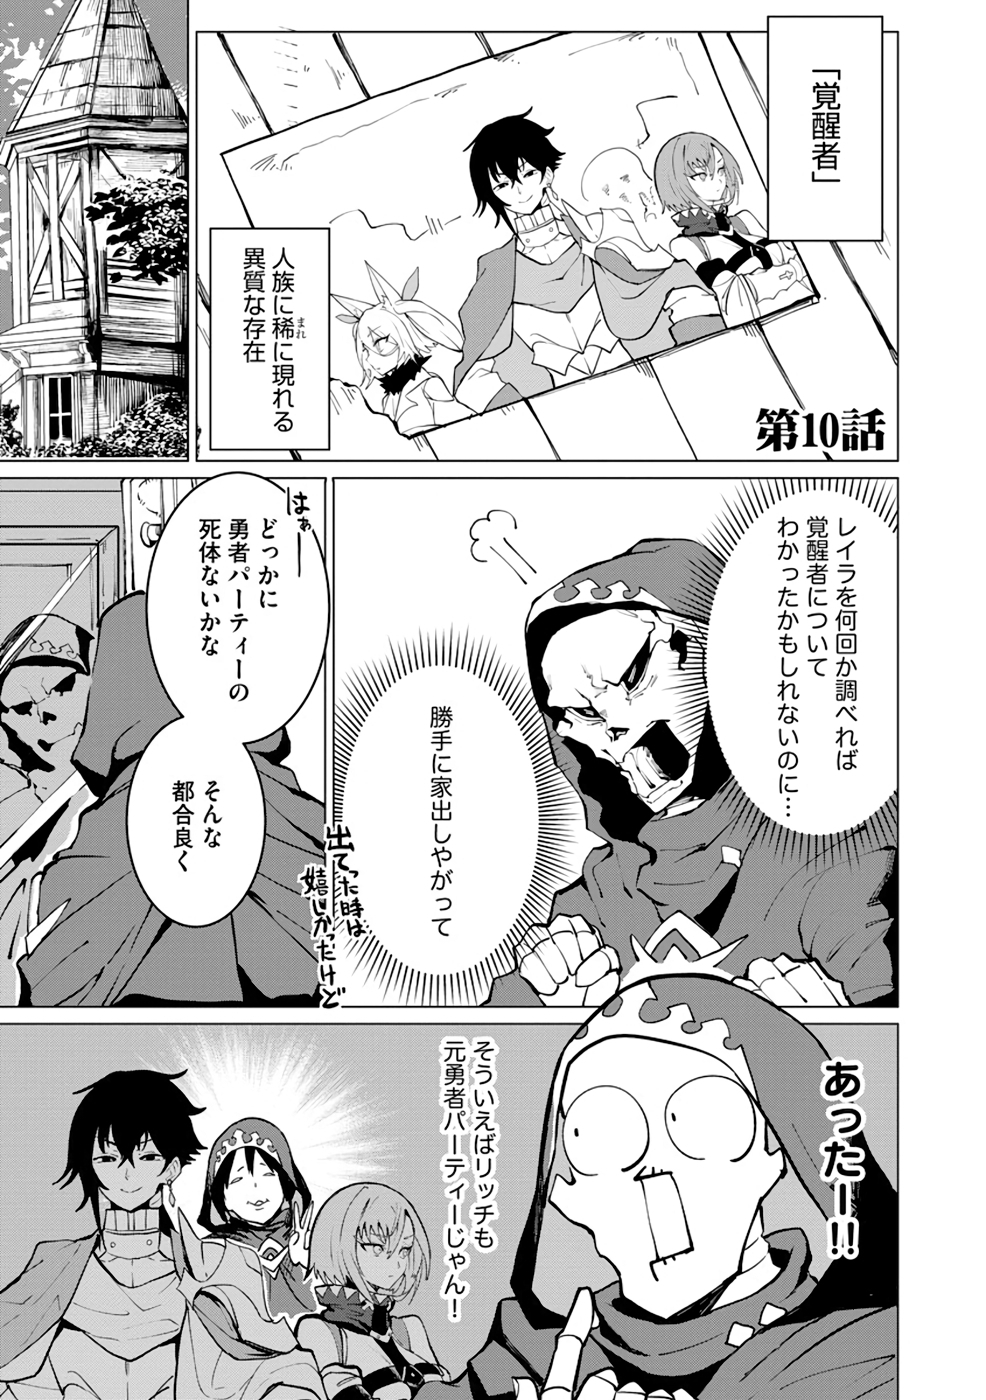 Yuusha Party wo Oidasareta Shiryou Majutsushi wa Lich ni Natte Maou-gun de Daisukina Kenkyuu Life wo Okuru - Chapter 10 - Page 1